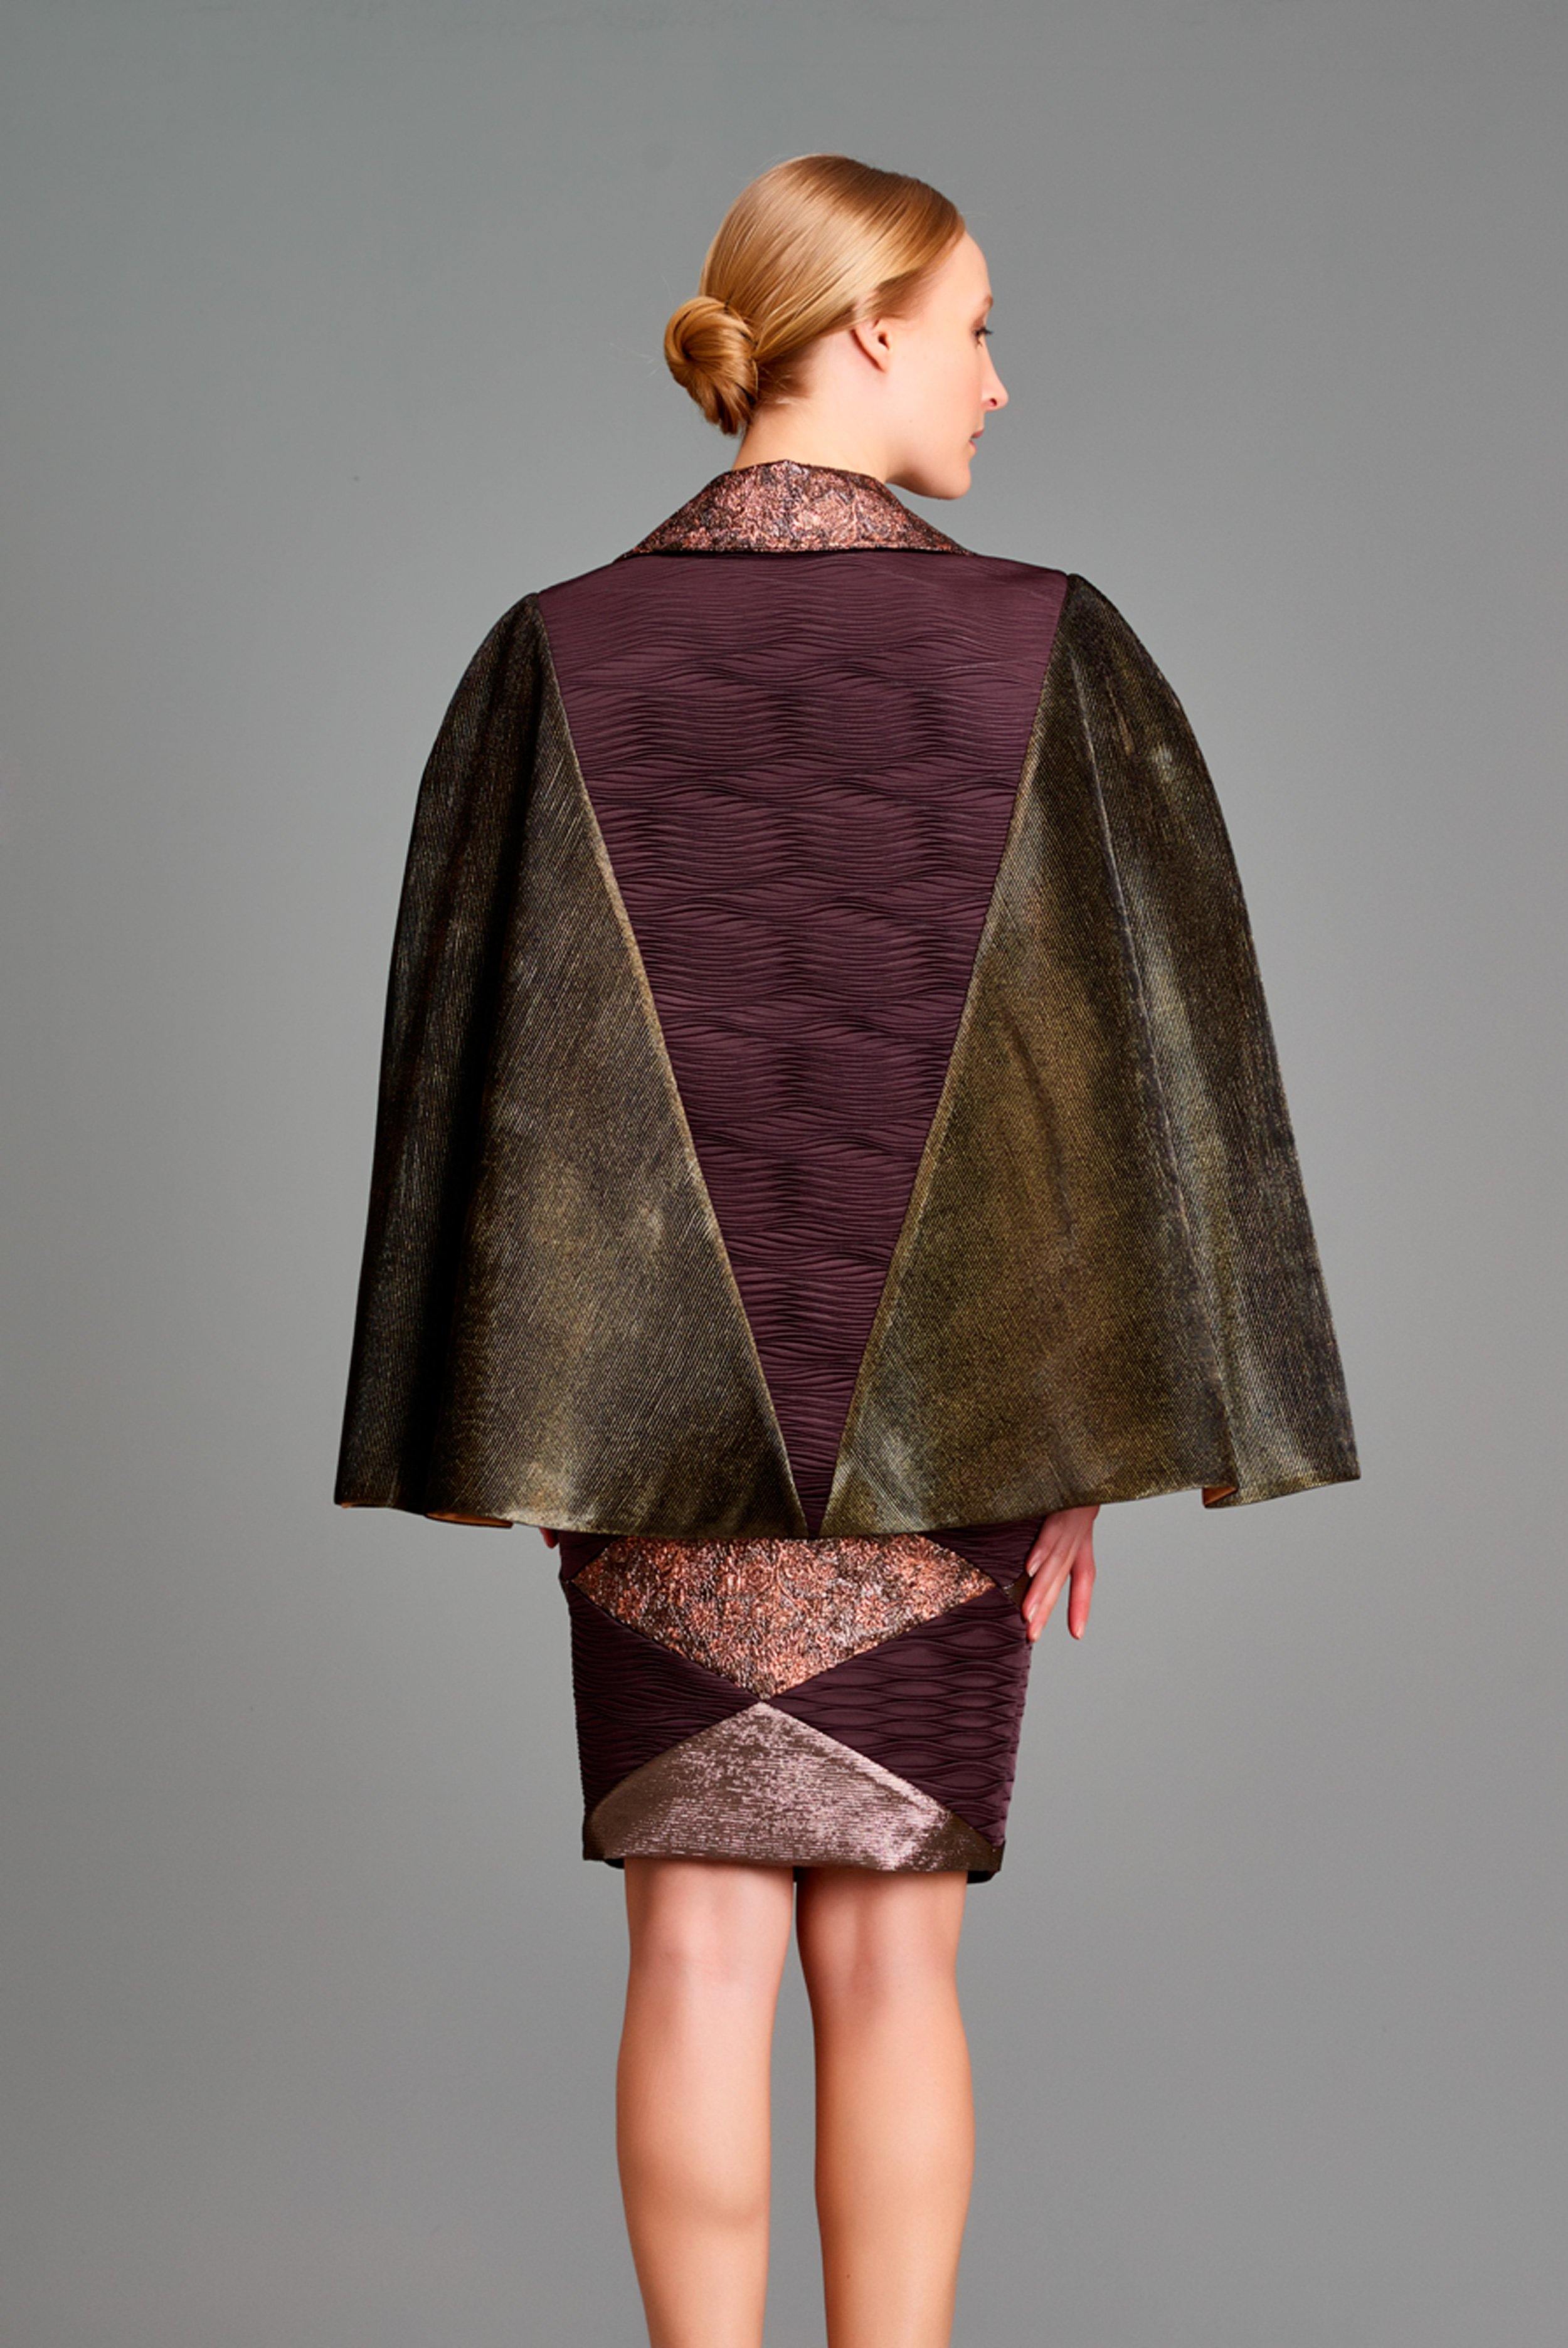 Multi fabric combined skirt - John Paul Ataker